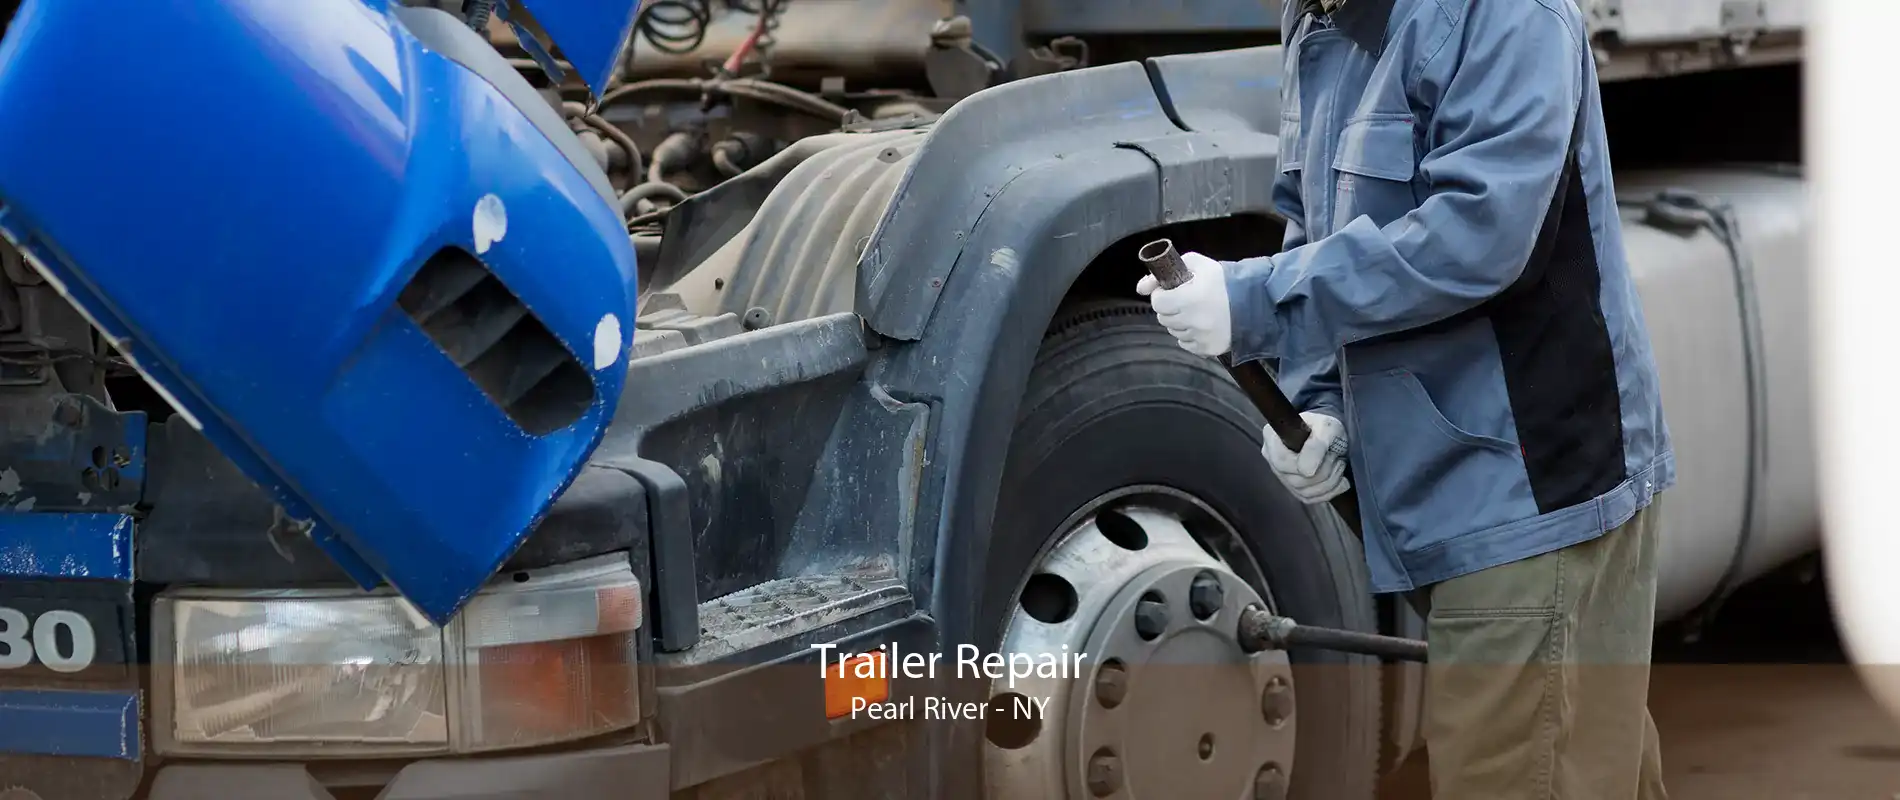 Trailer Repair Pearl River - NY